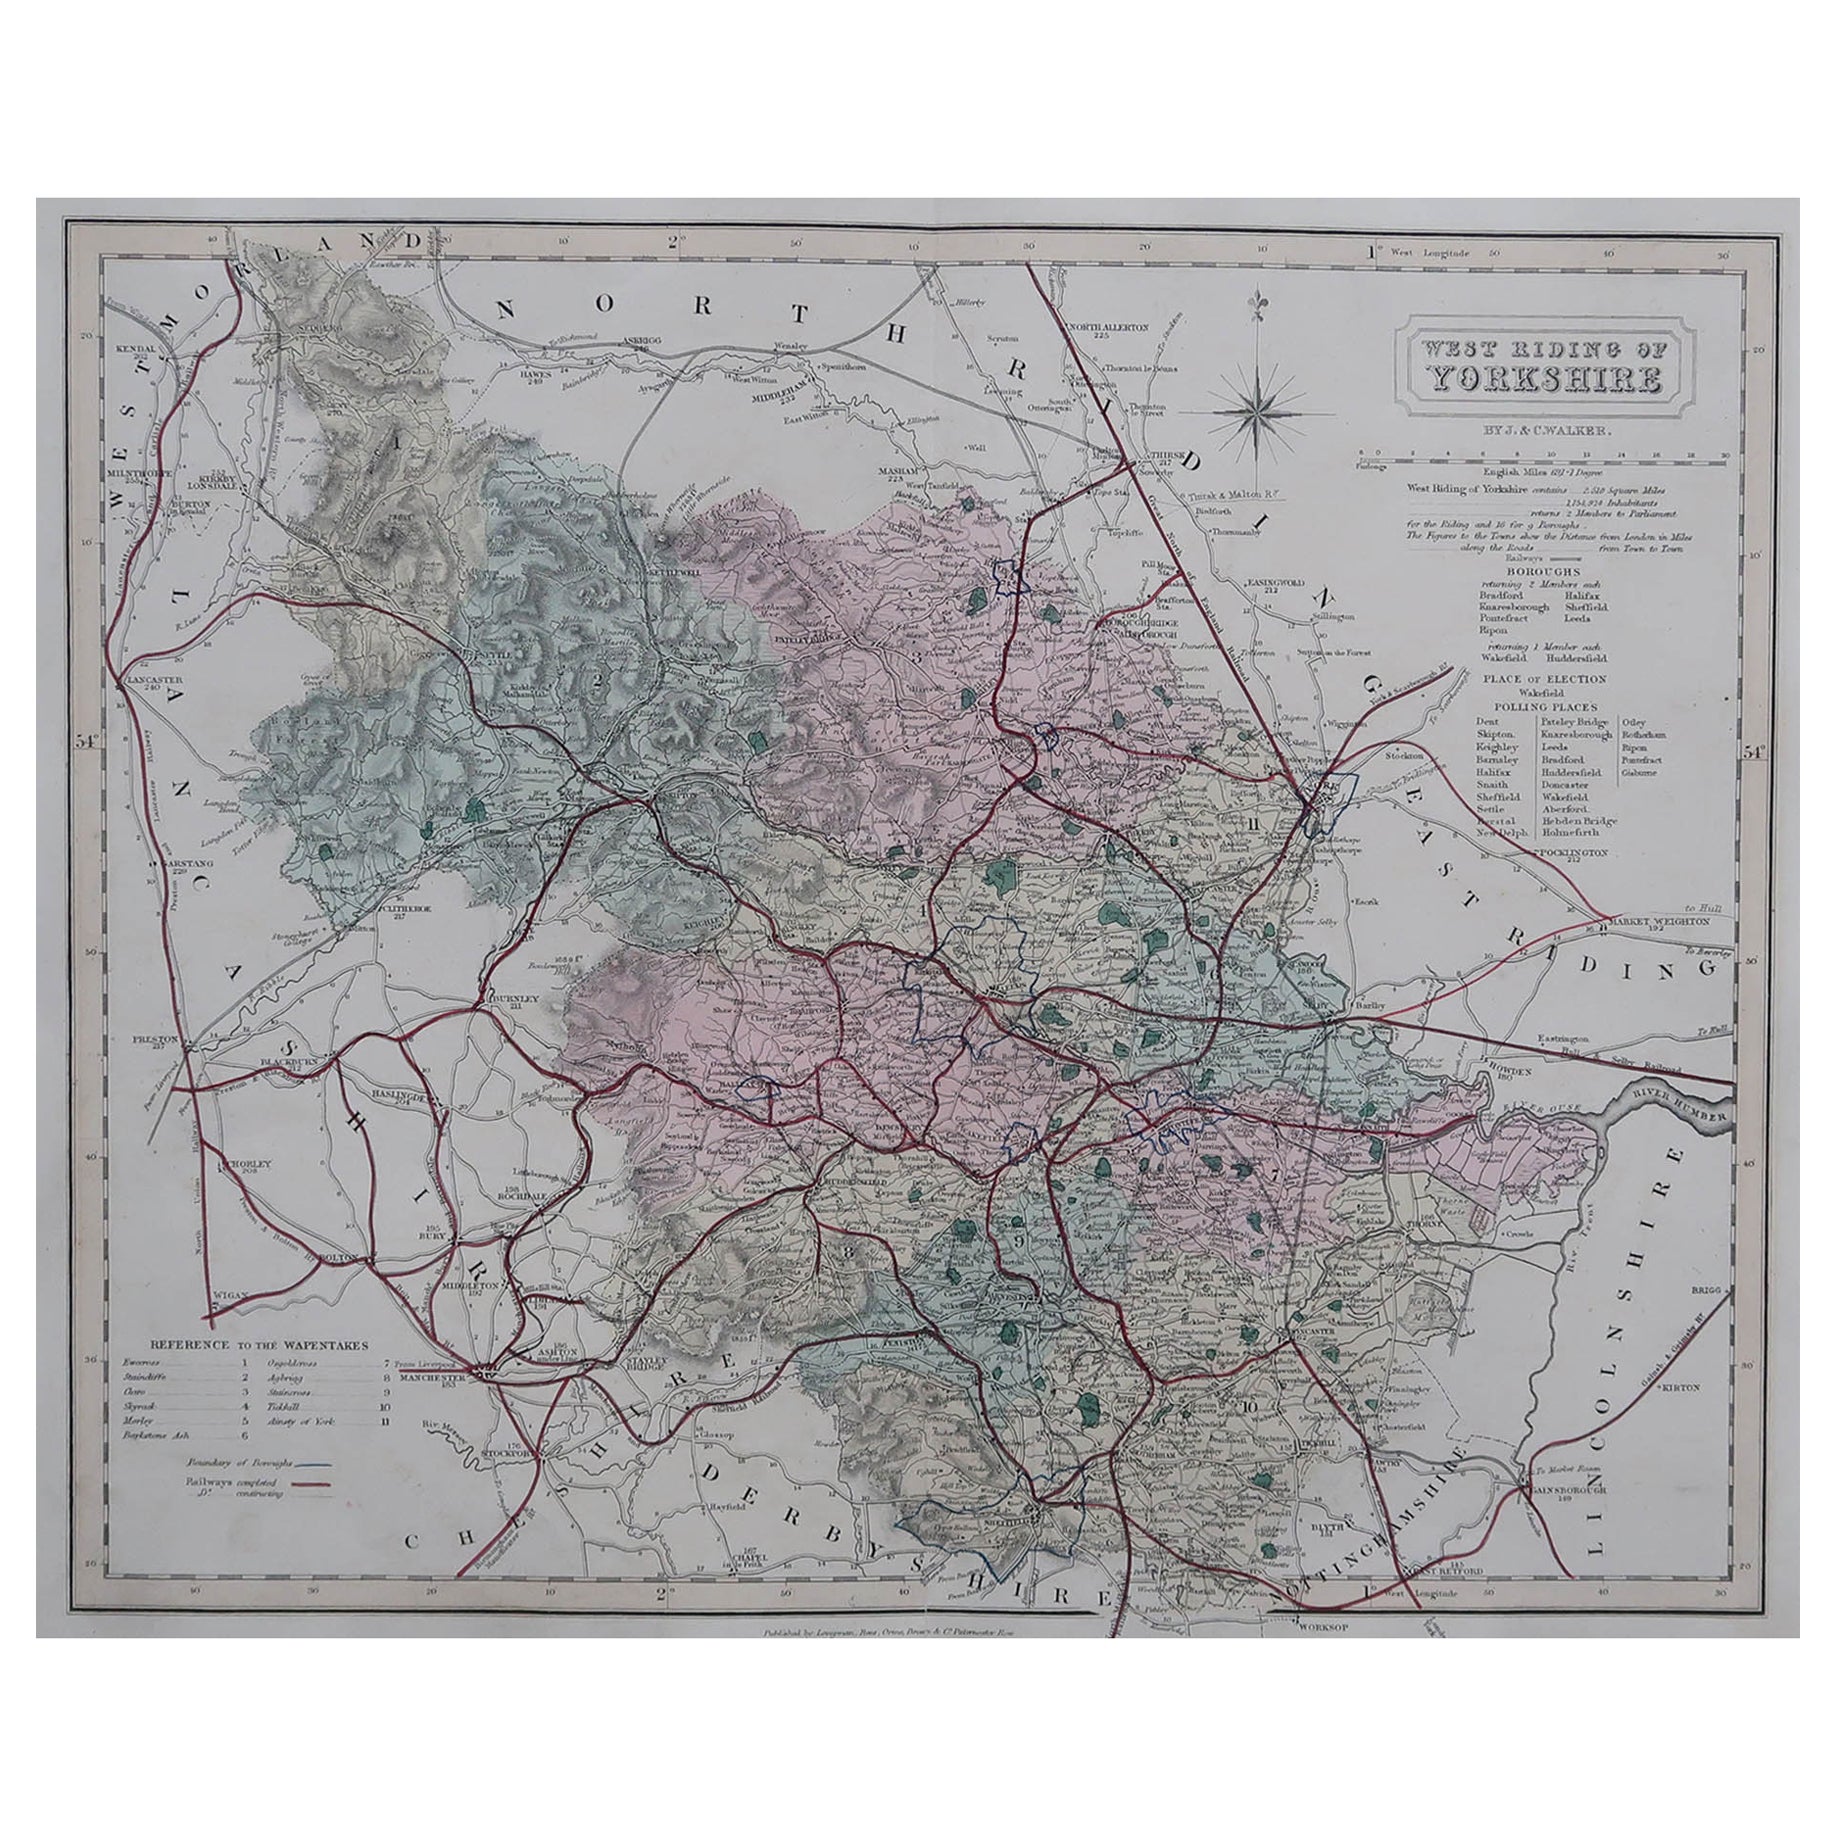 Carte originale et ancienne du comté d'Angleterre - West Yorkshire. J & C Walker, 1851